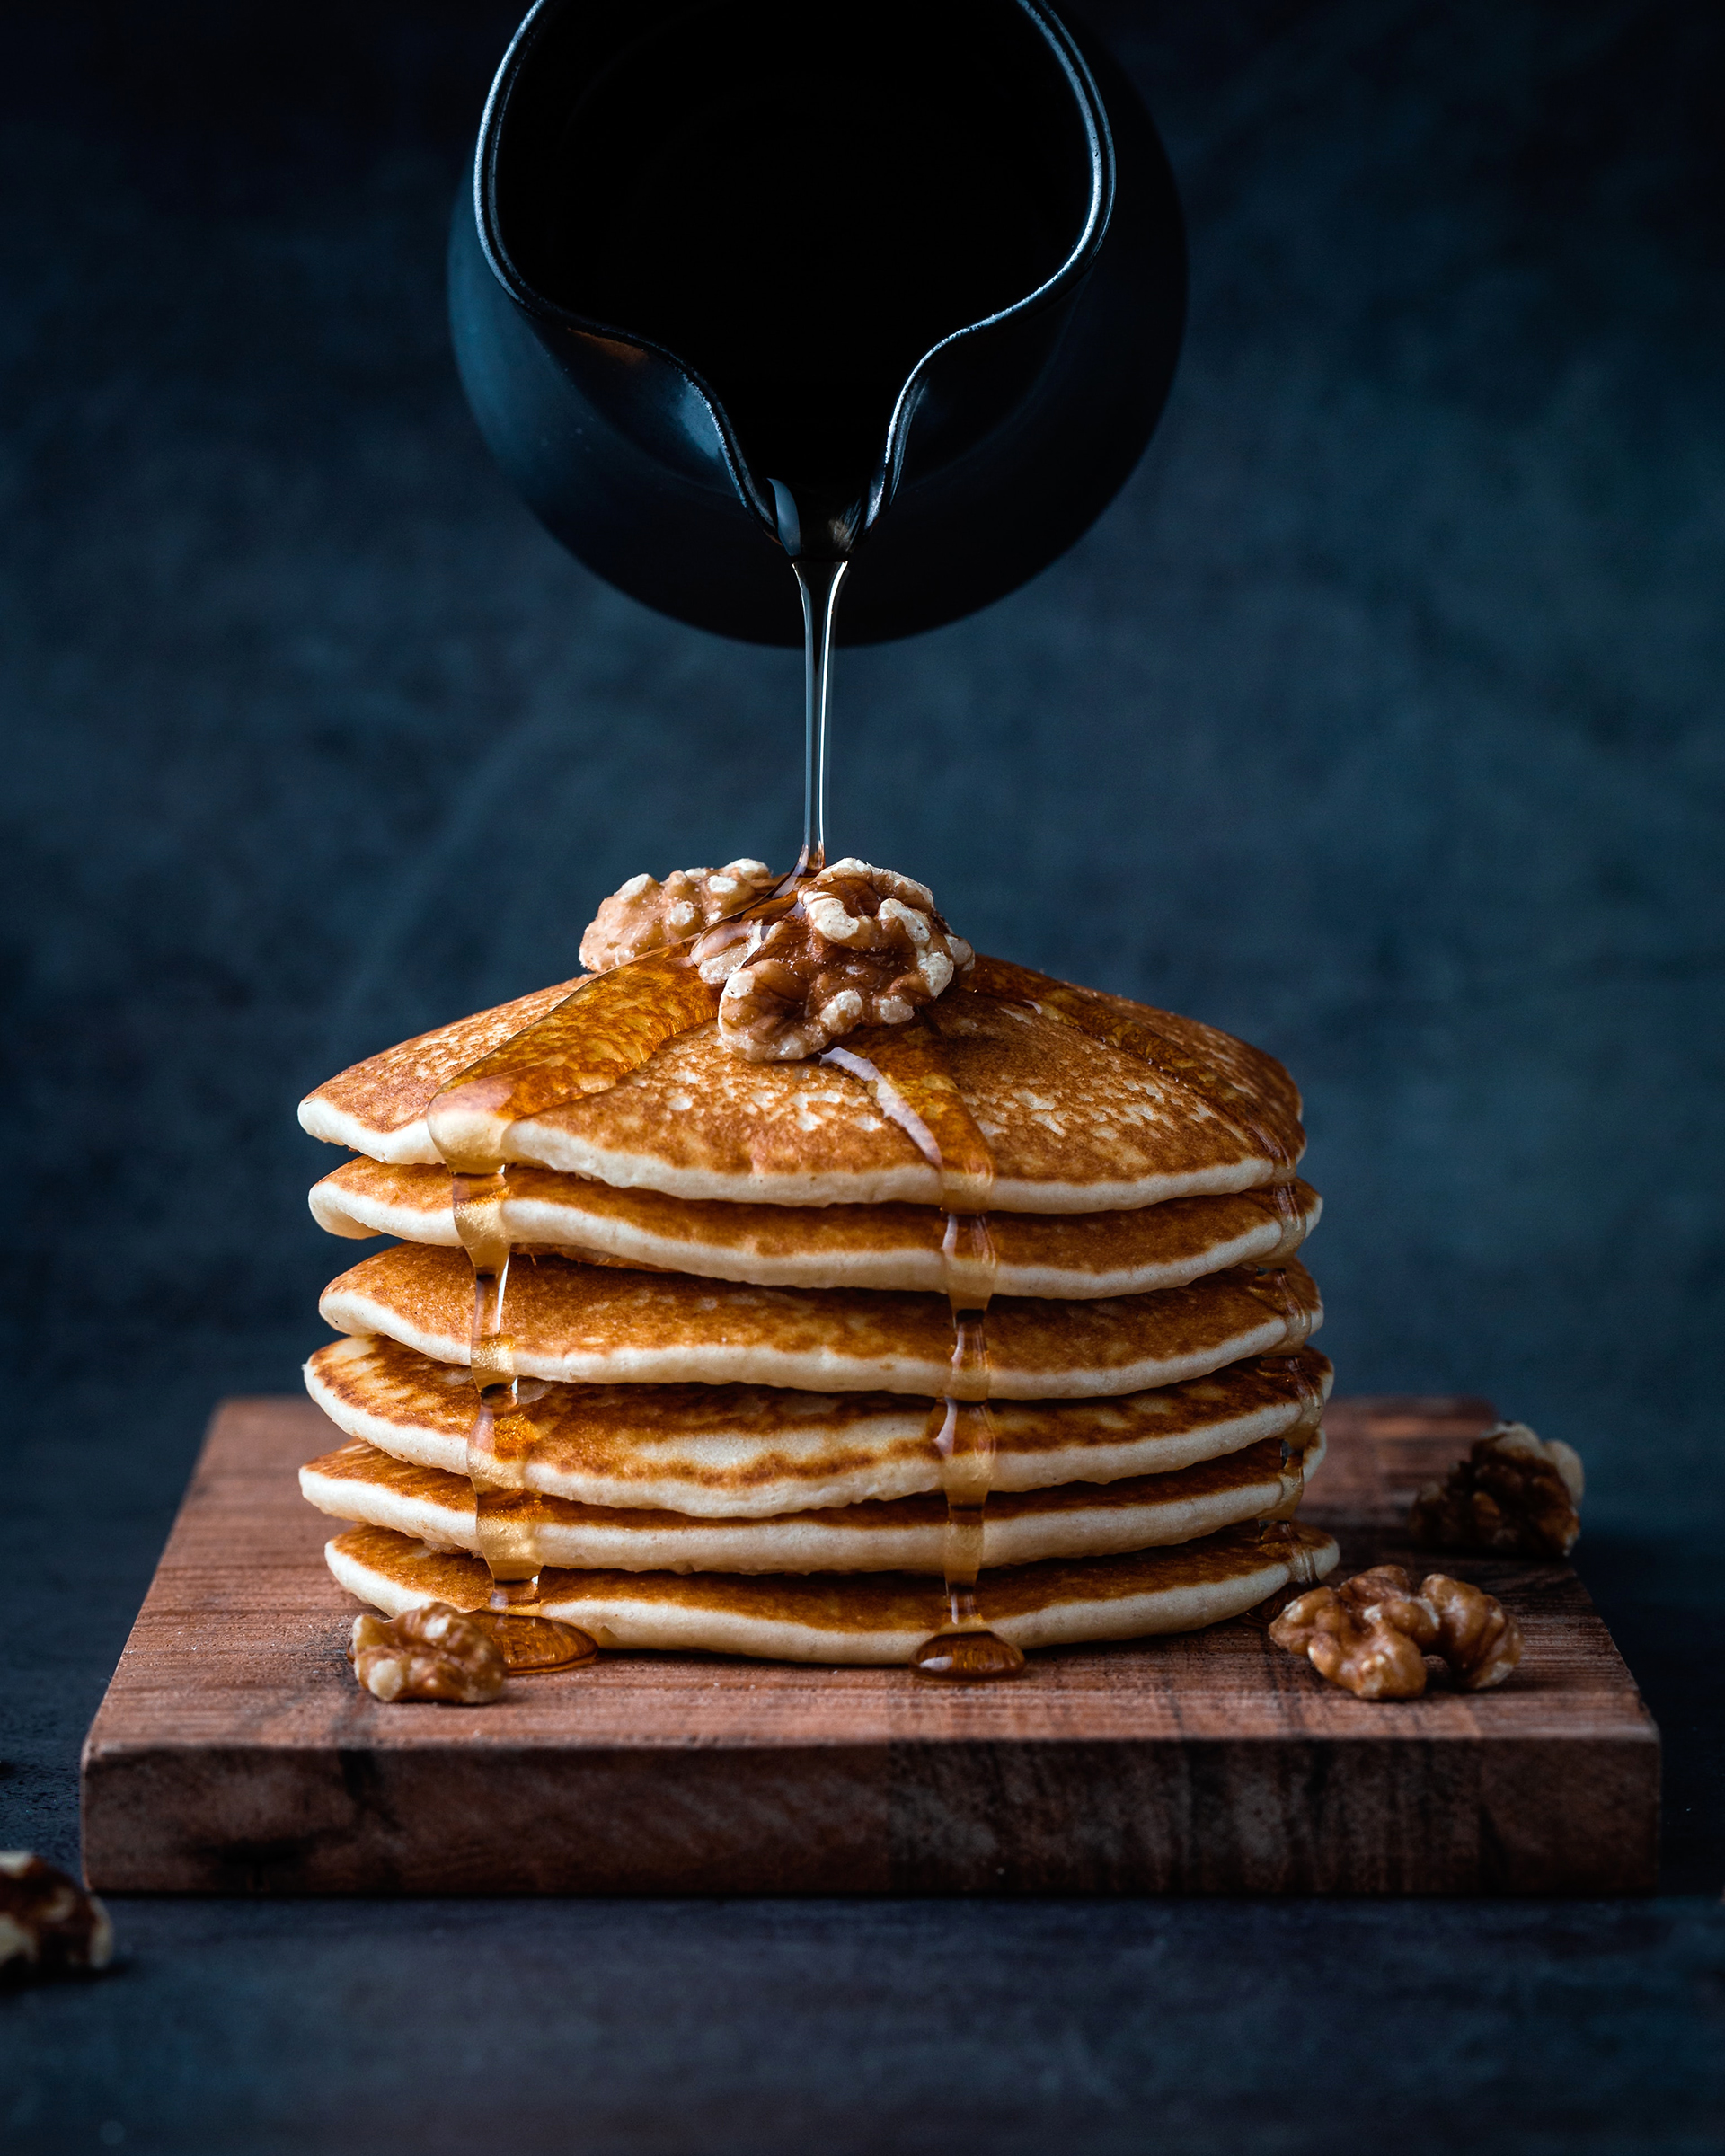 Lecker zum Frühstück oder Brunch: Pancakes mit Honig und Walnüssen